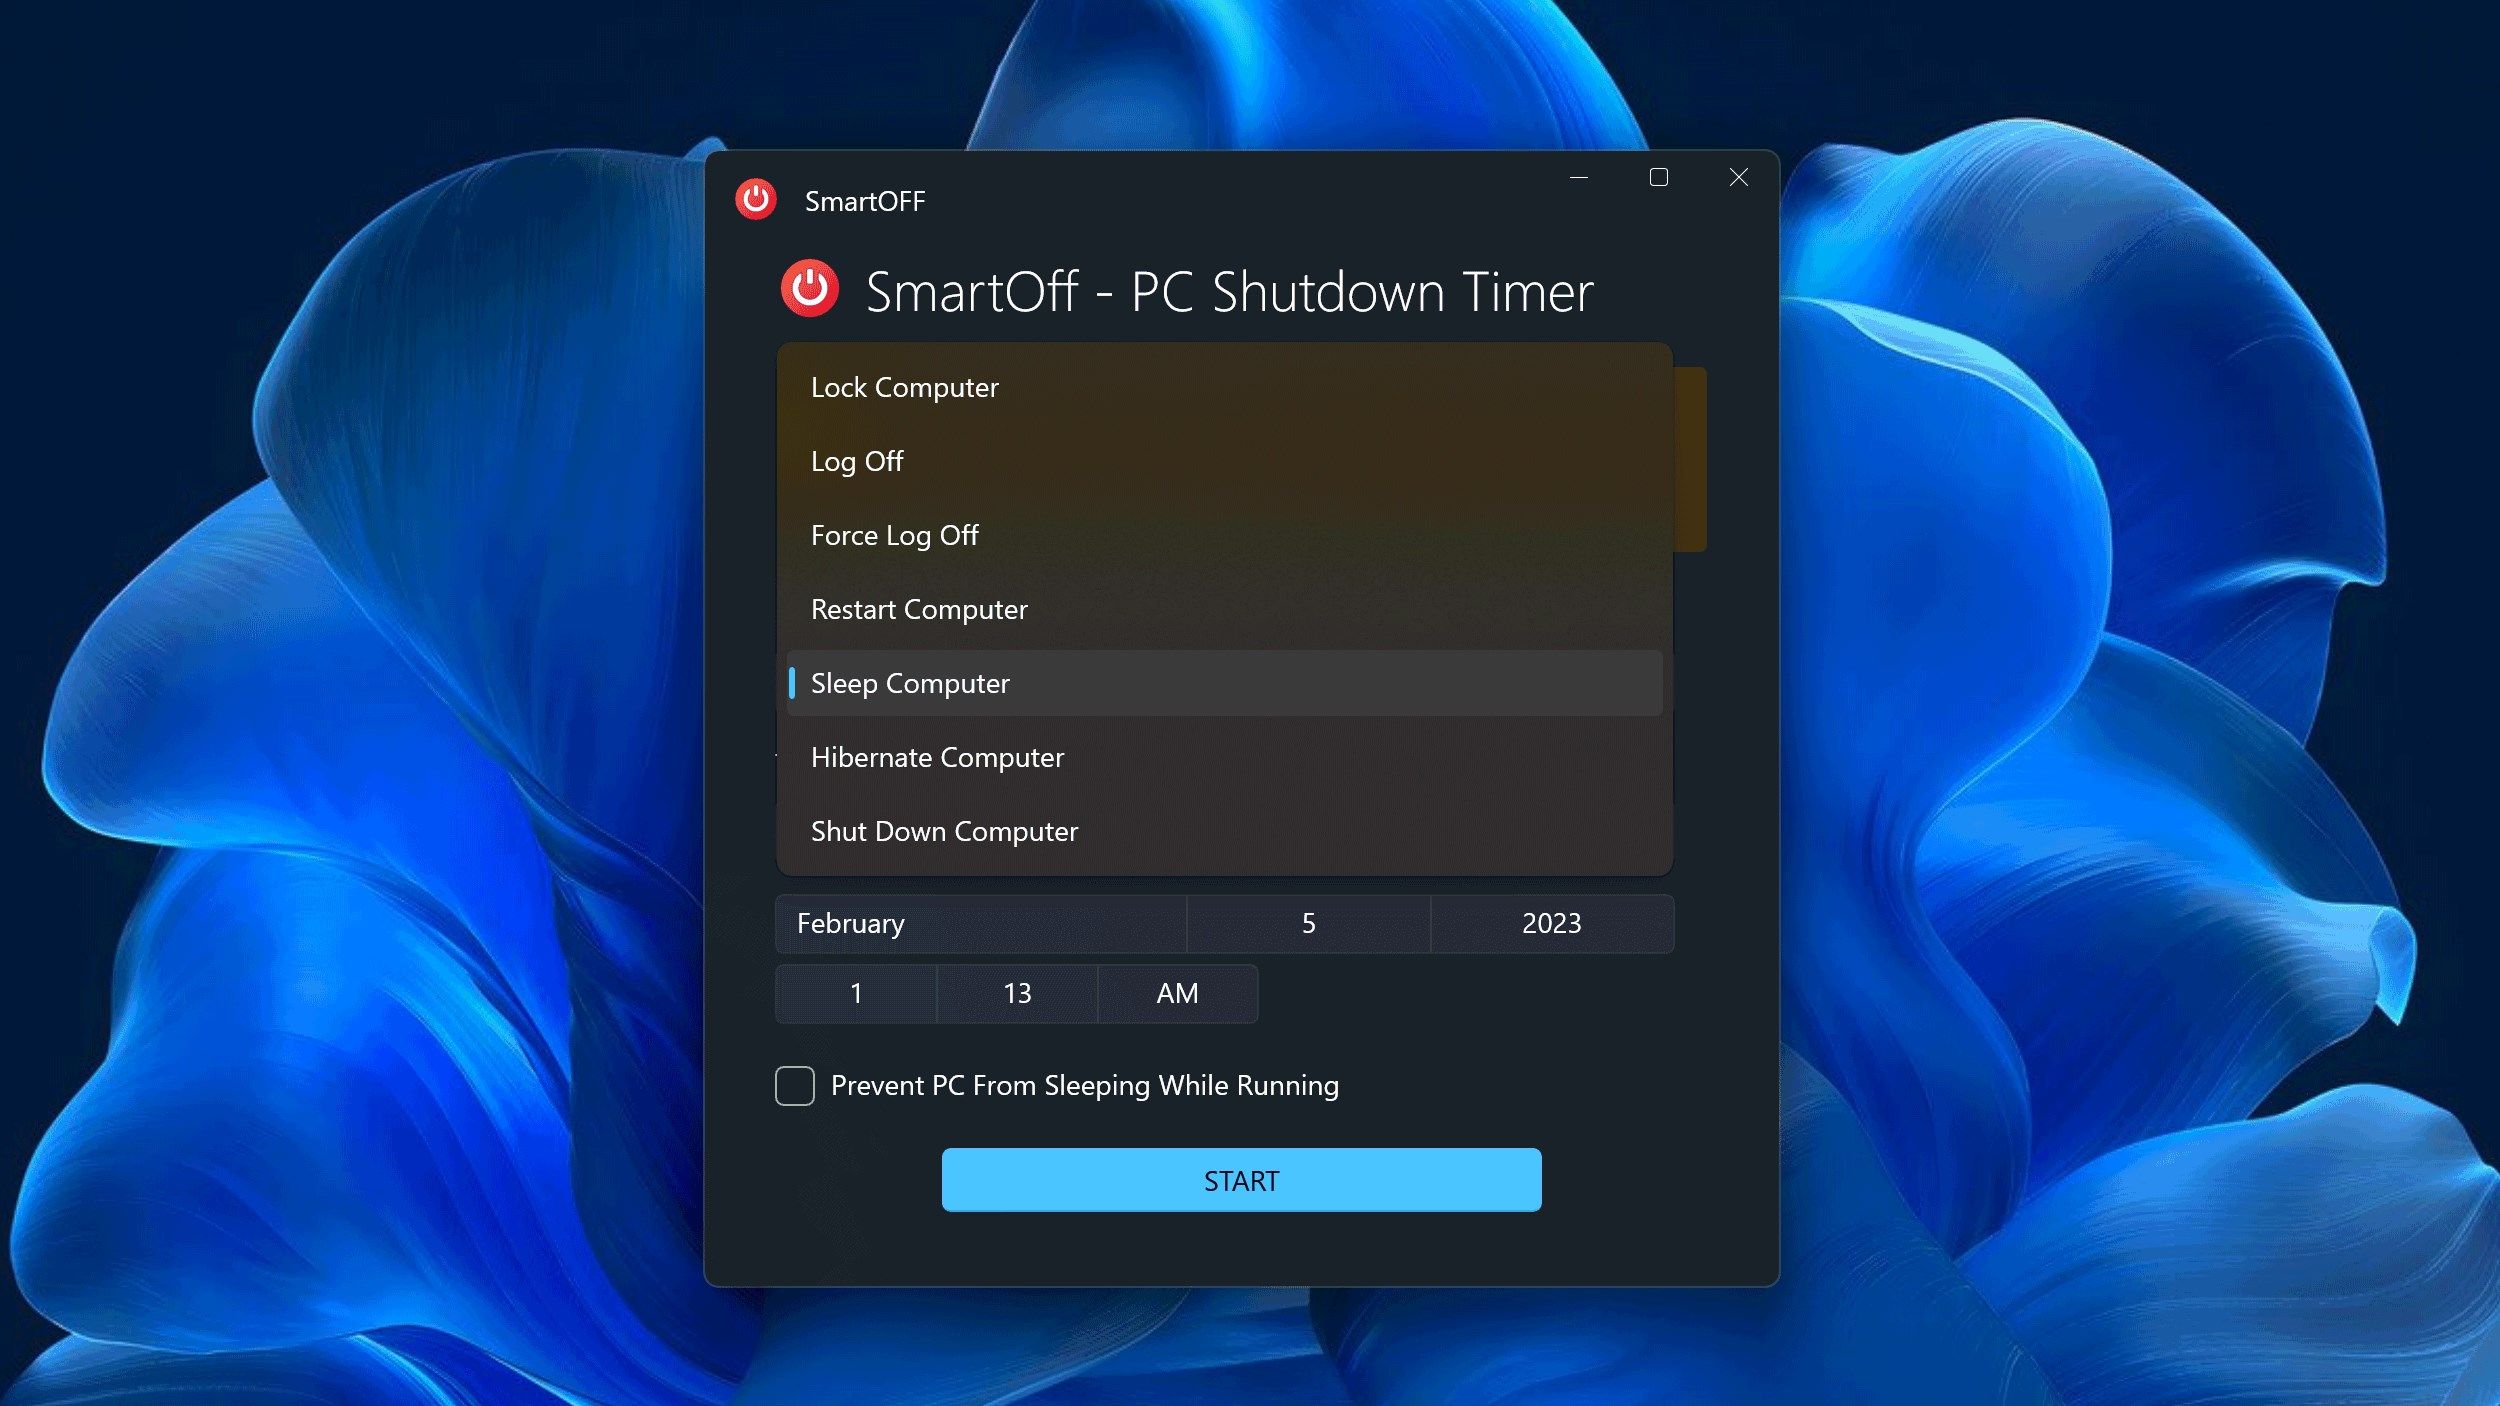 SmartOff - PC Shutdown Timer